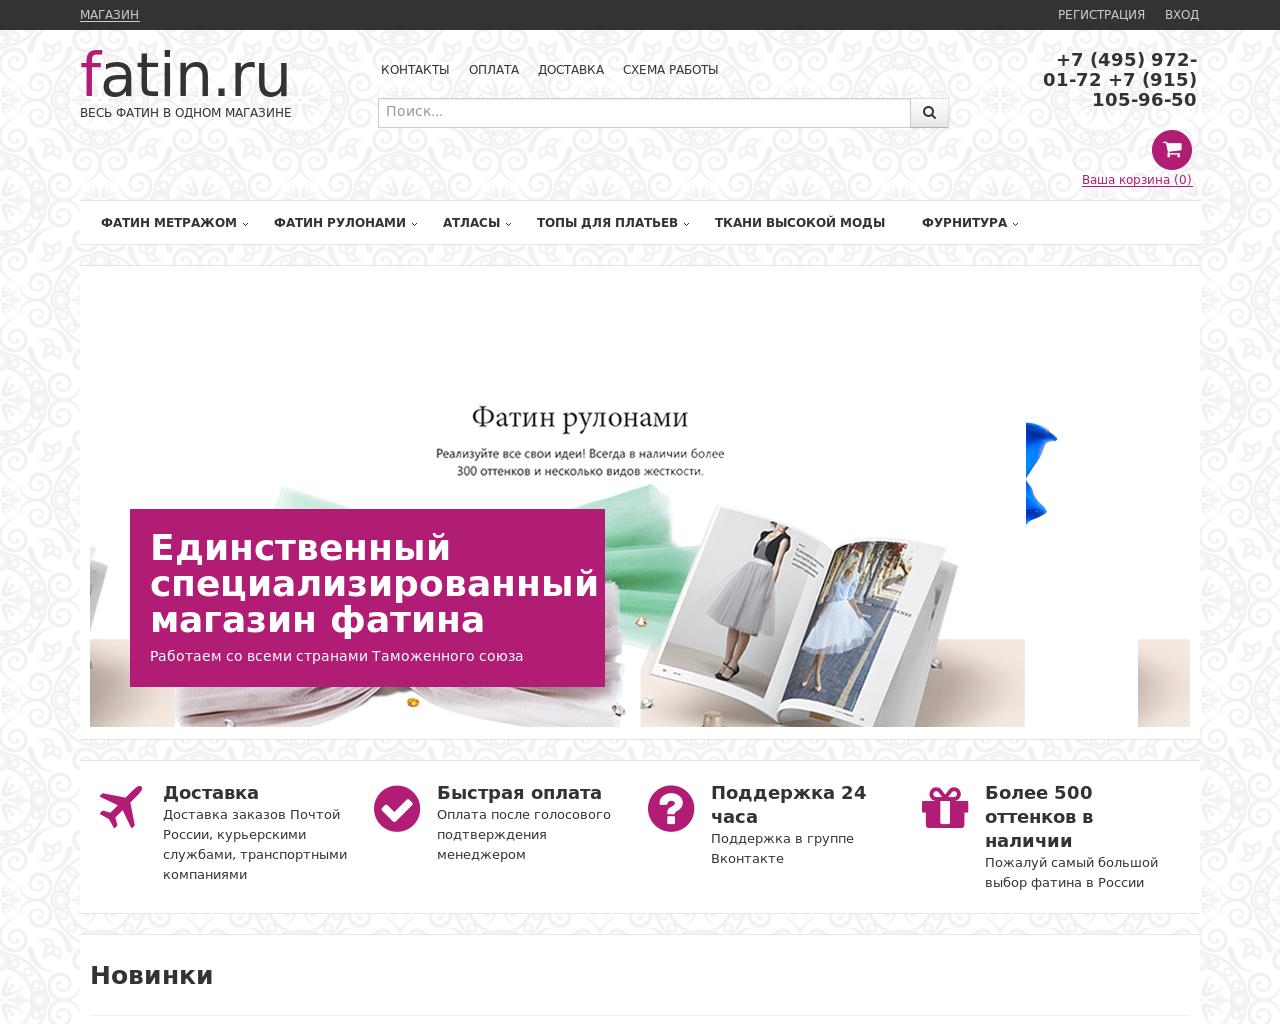 Изображение сайта fatin.ru в разрешении 1280x1024